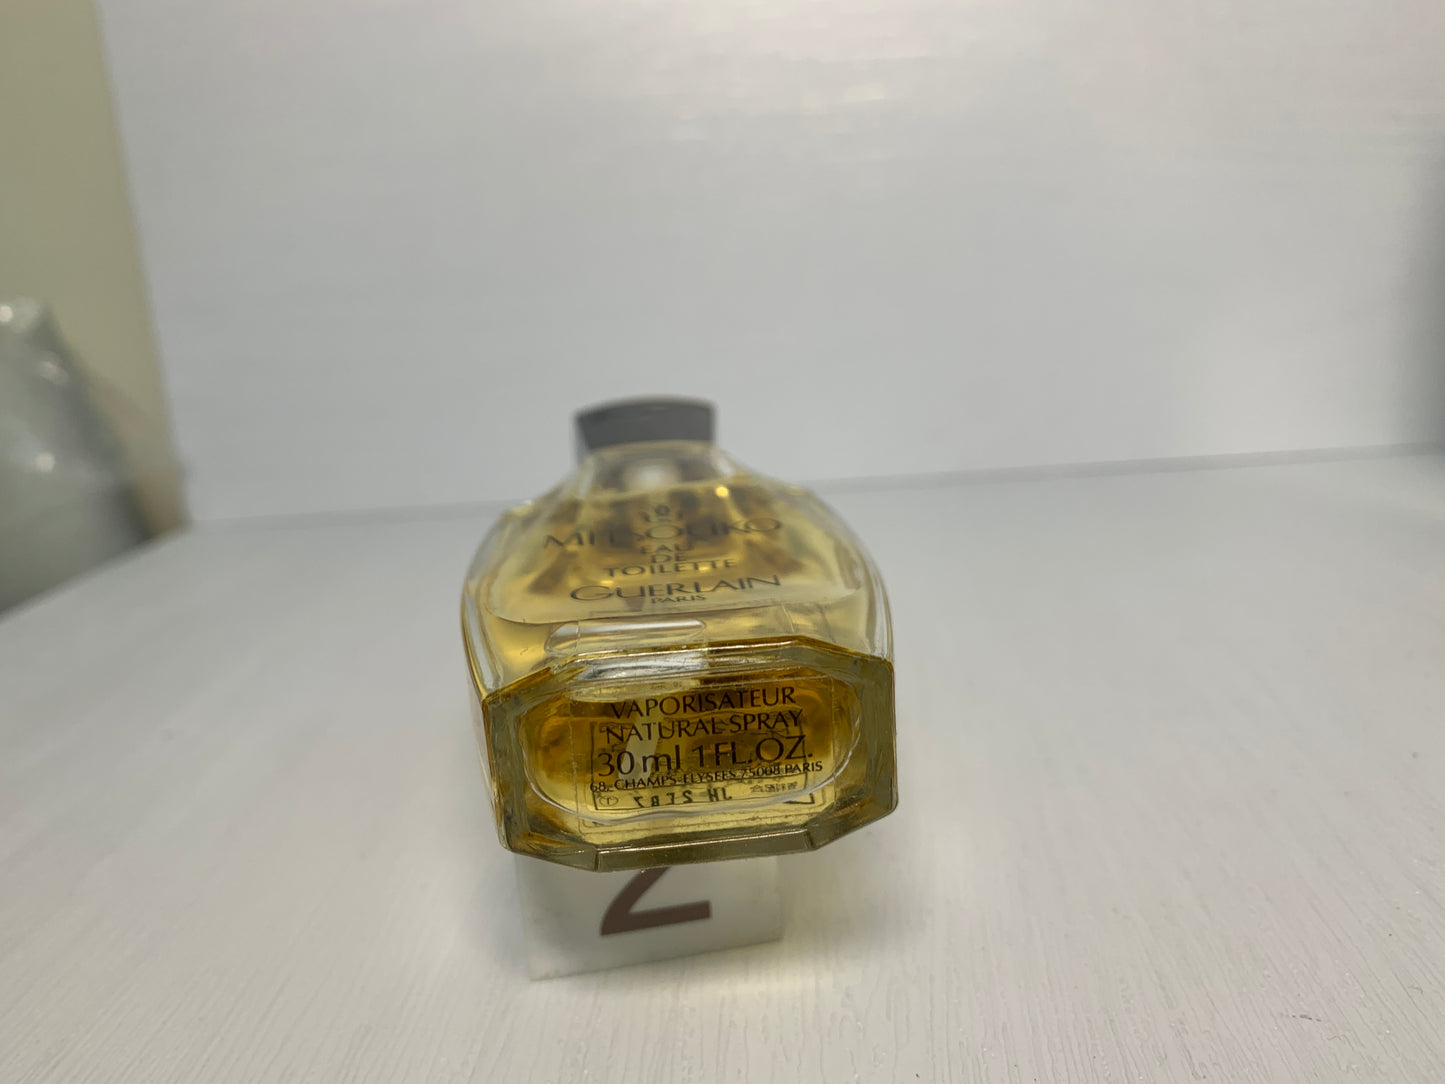 Rare Guerlain Mitsouko 8ml 30ml  100ml perfume - 8NOV